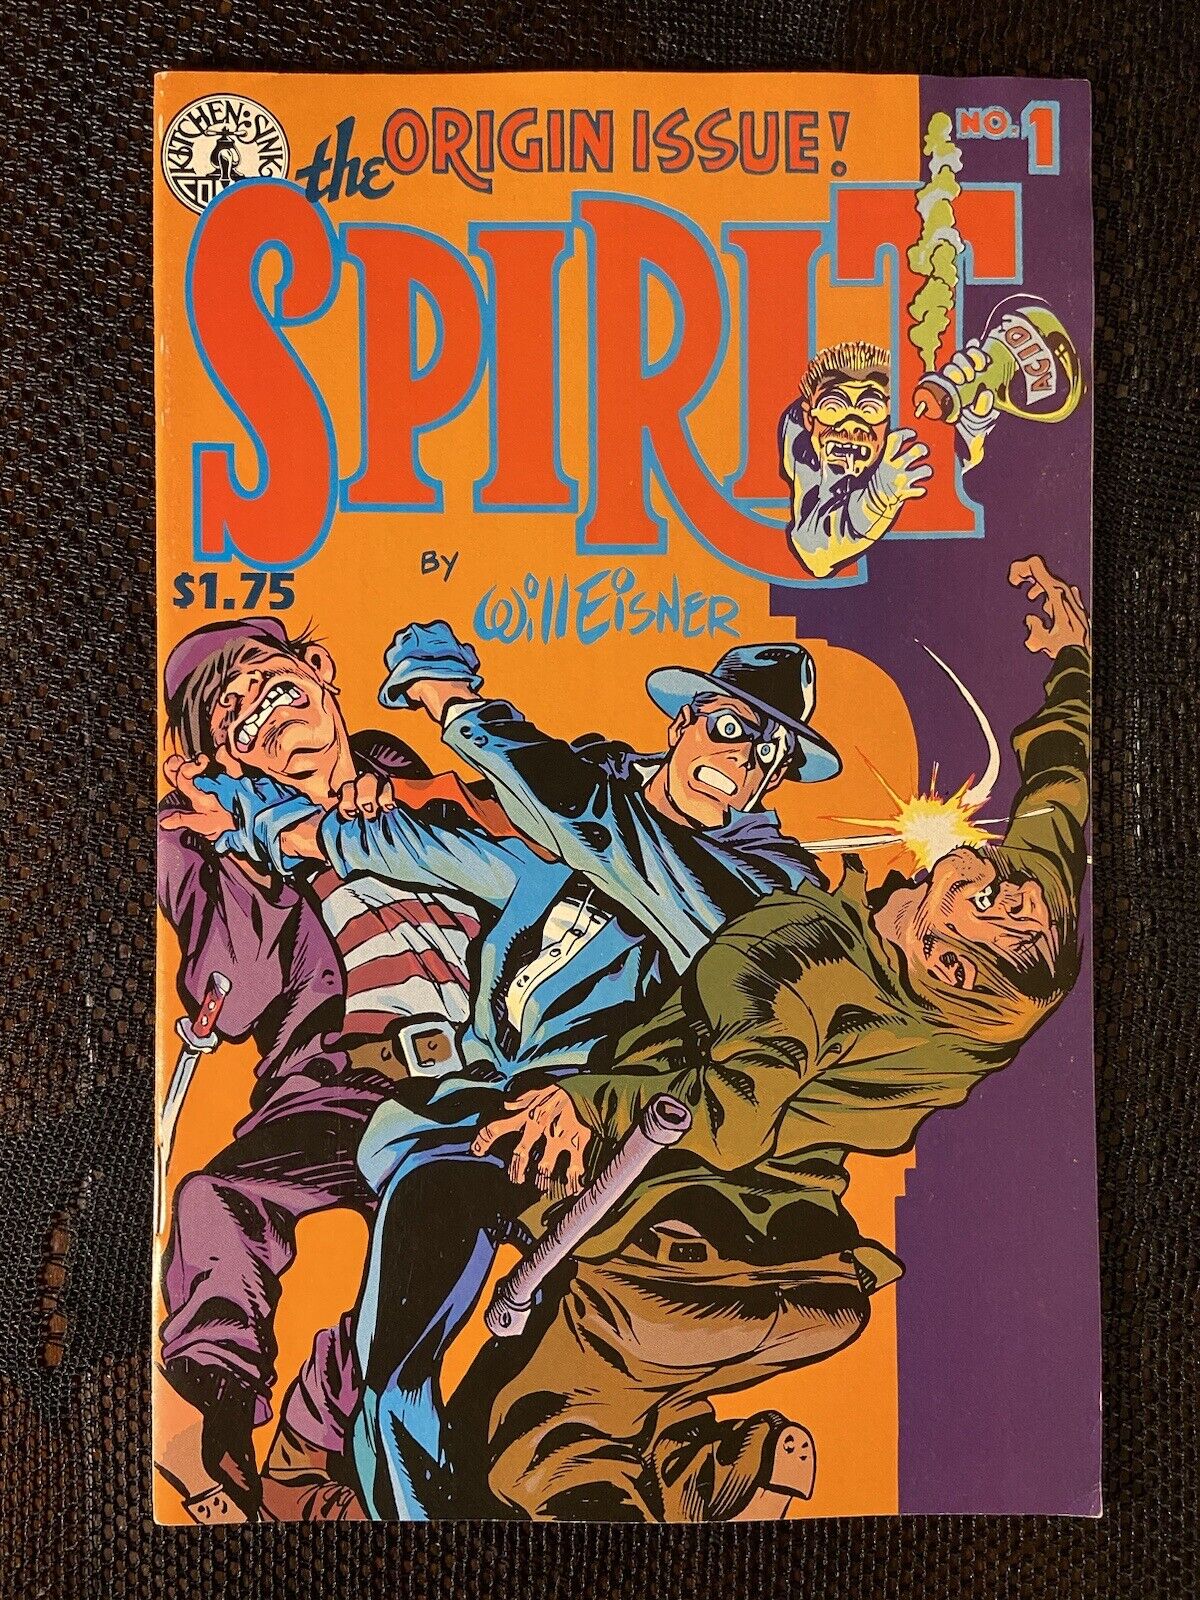 THE SPIRIT #1 (1982) KITCHEN SINK PRESS WILL EISNER